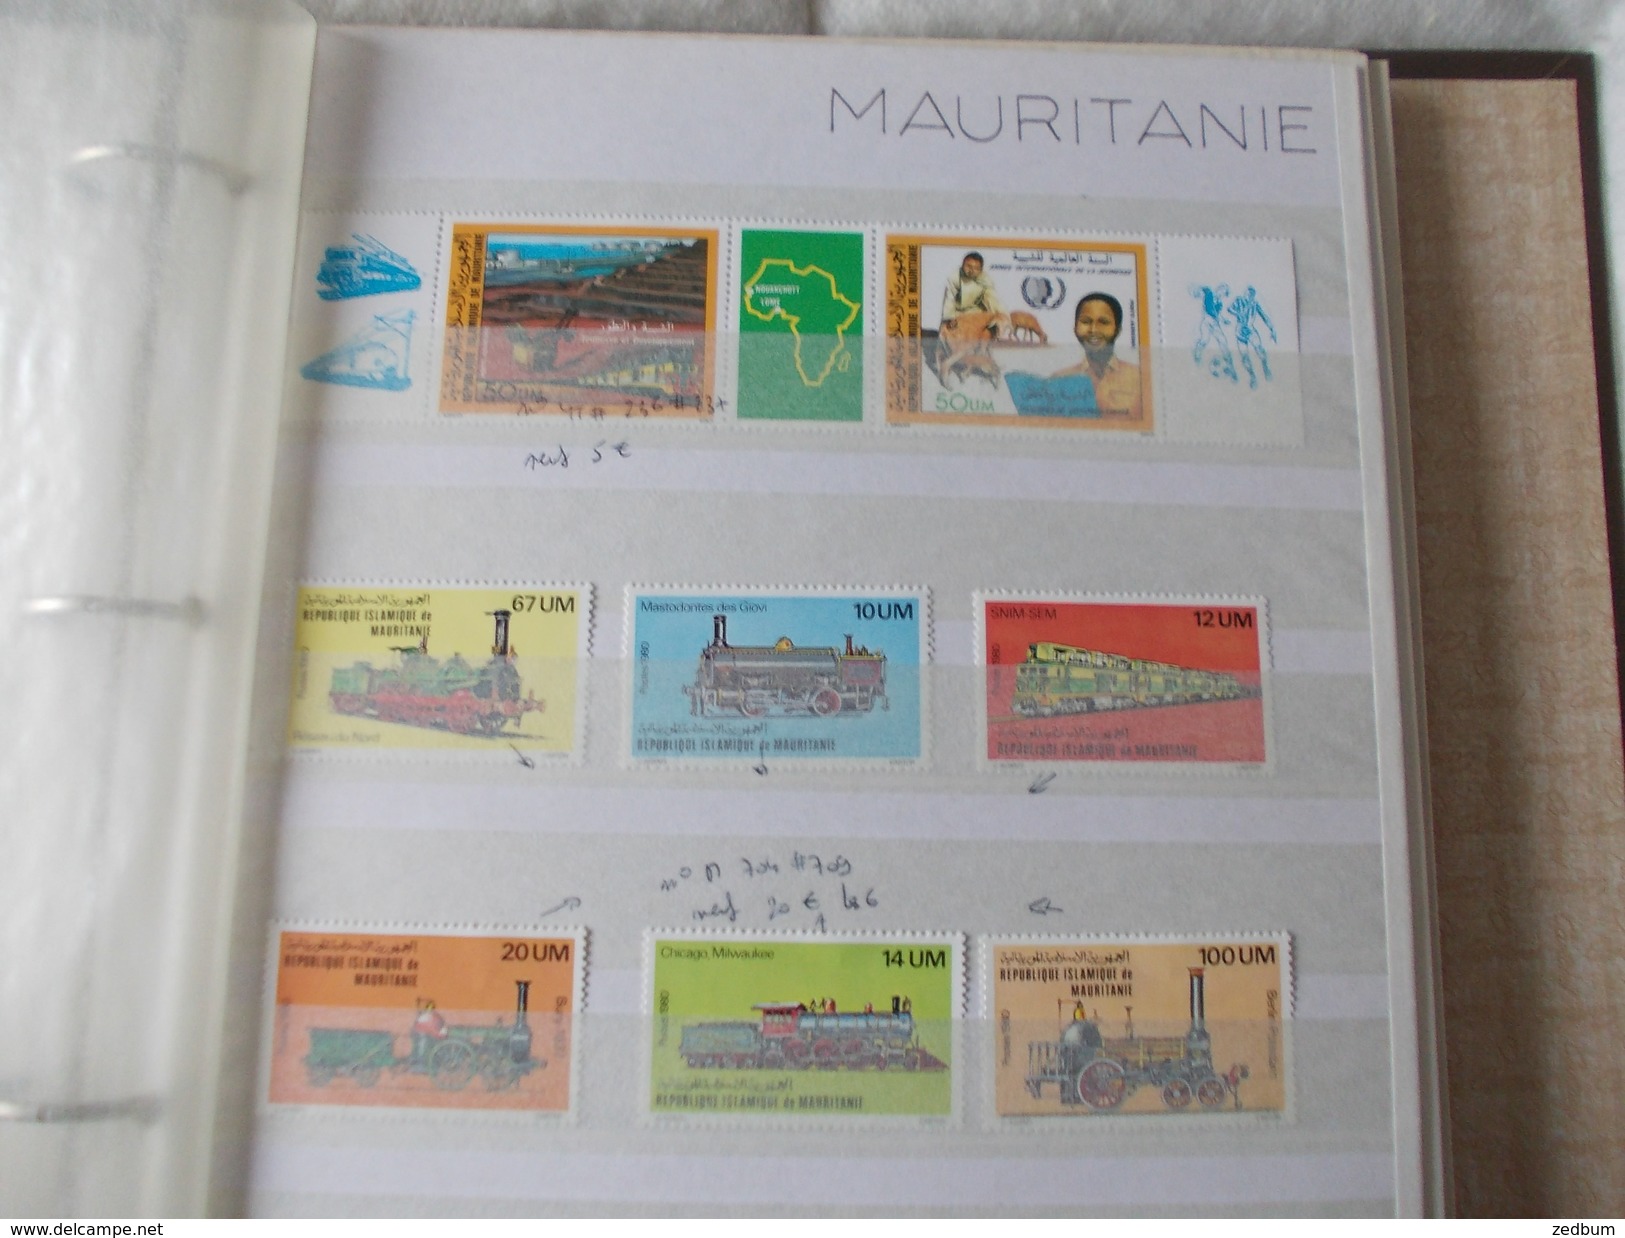 ALBUM 7 collection de timbres avec pour thème le chemin de fer train de tout pays valeur 286.40 &euro;